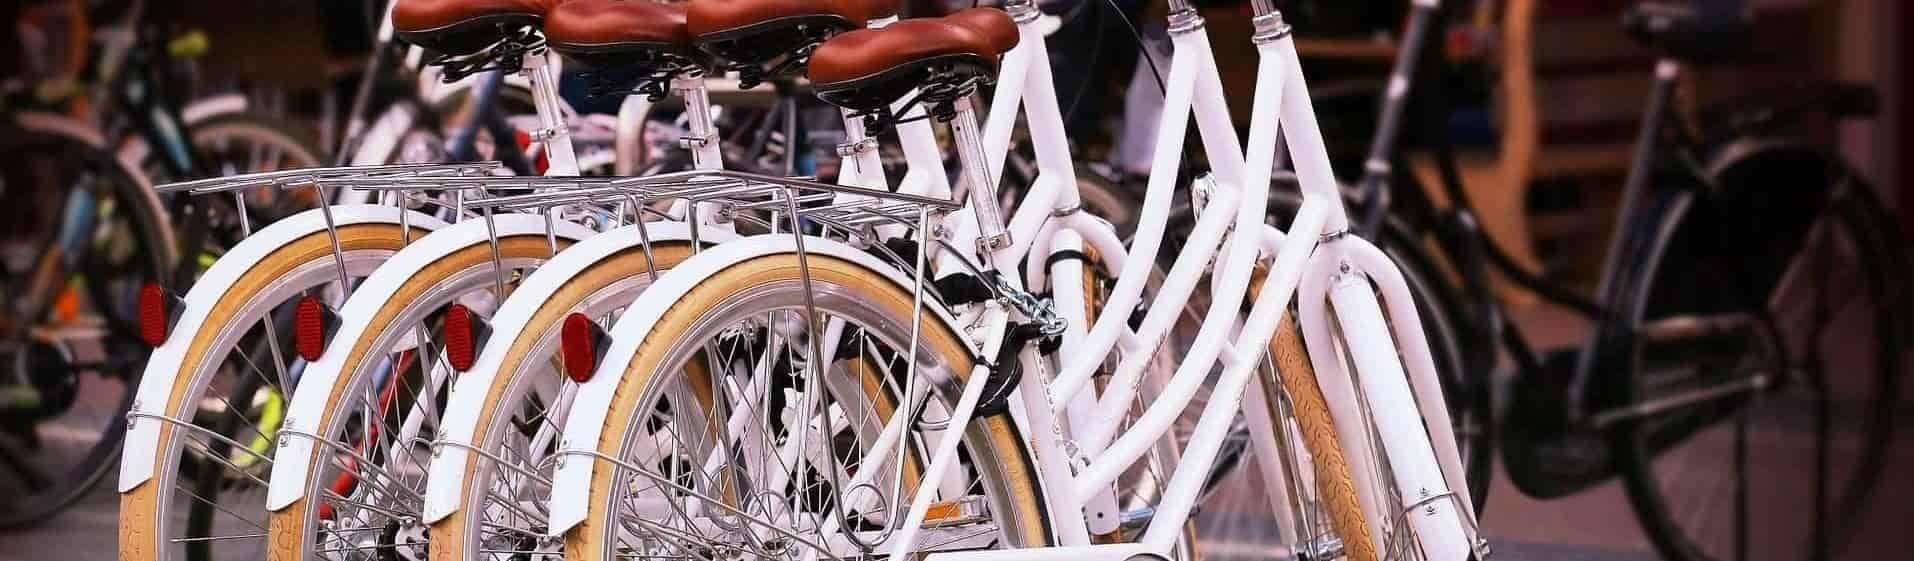 XTR-shop - Zoeken fietsen op wazaa